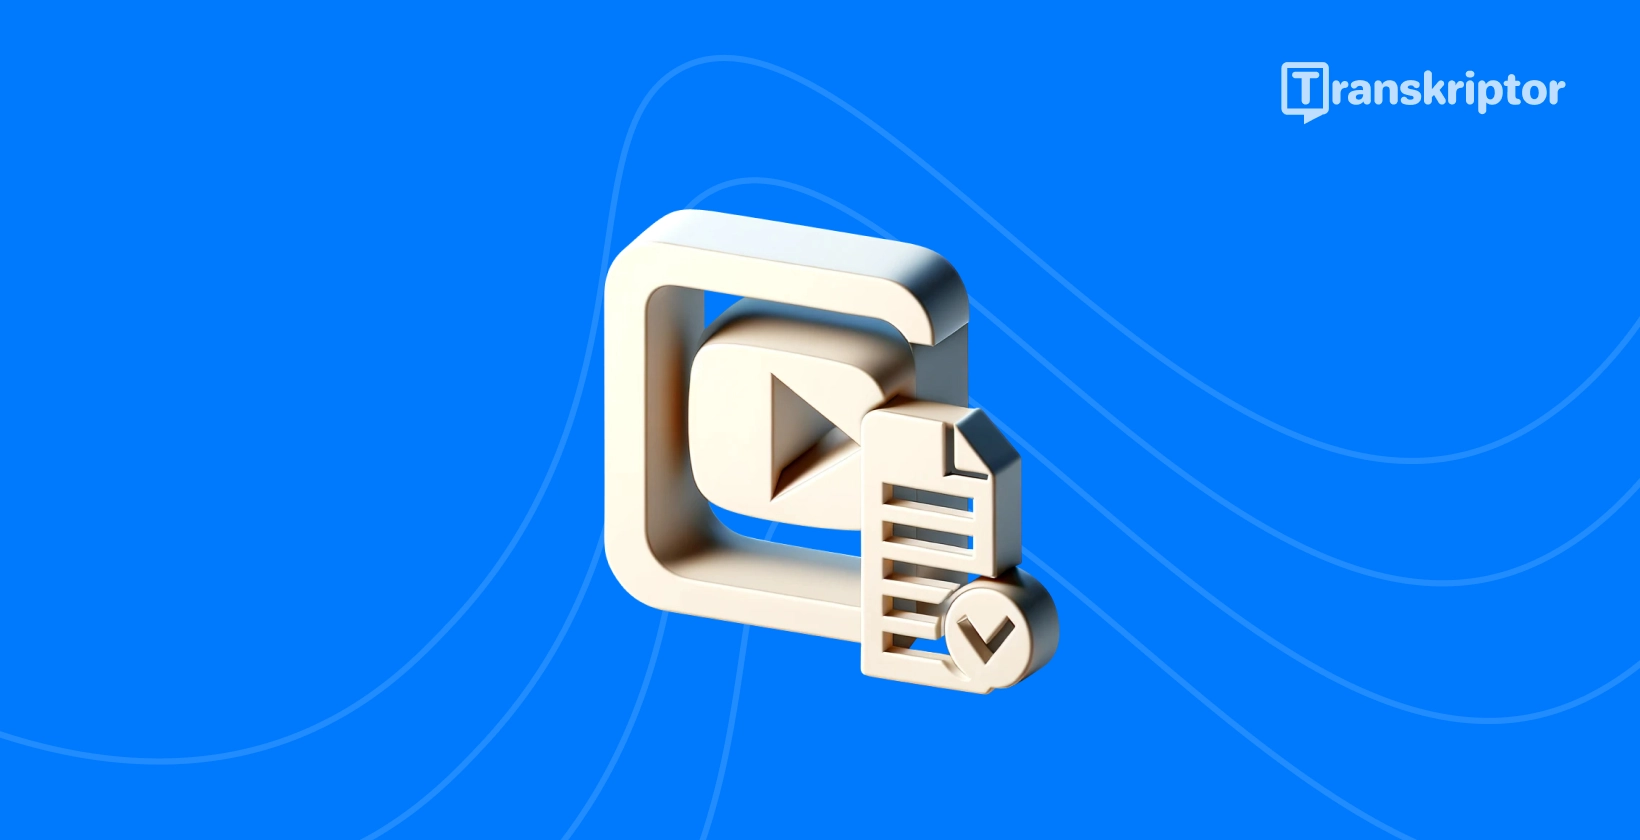 Transkriptionstjänster ikon med uppspelningsknapp och dokument som symboliserar YouTube video konvertering till text.